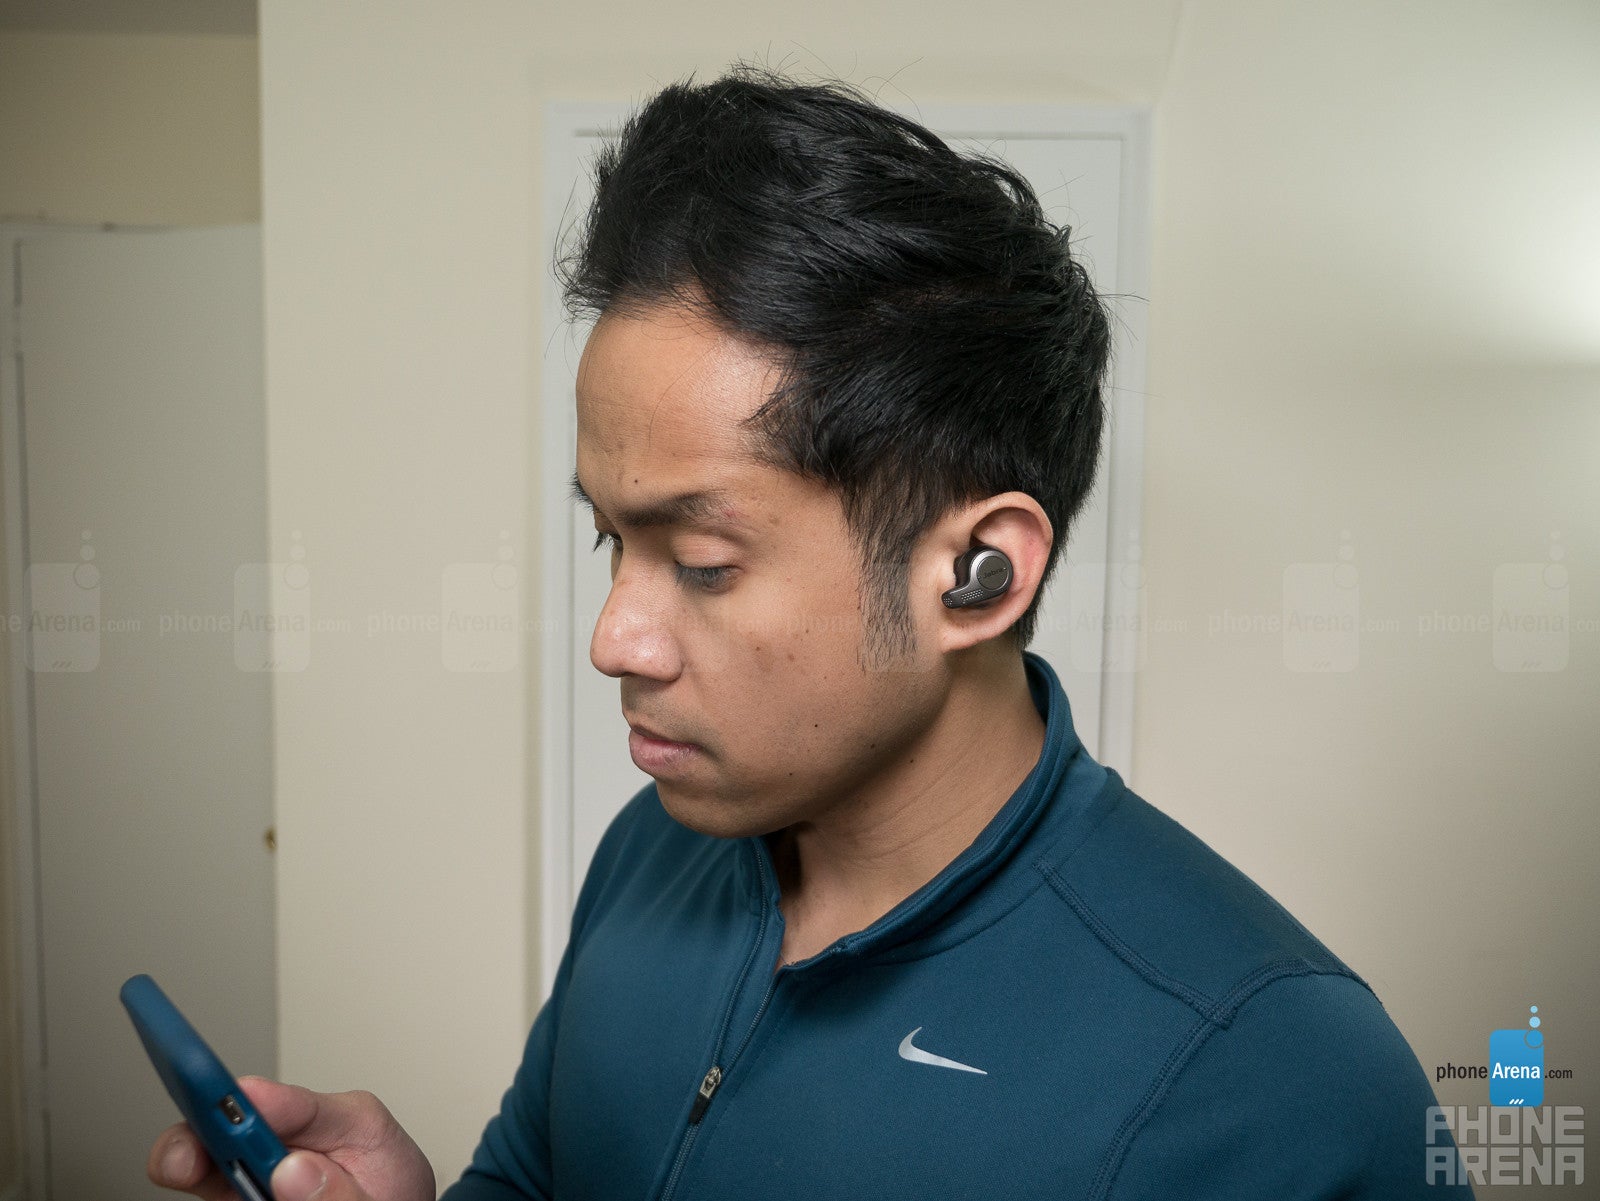 Jabra Elite 65t wireless earphones Review